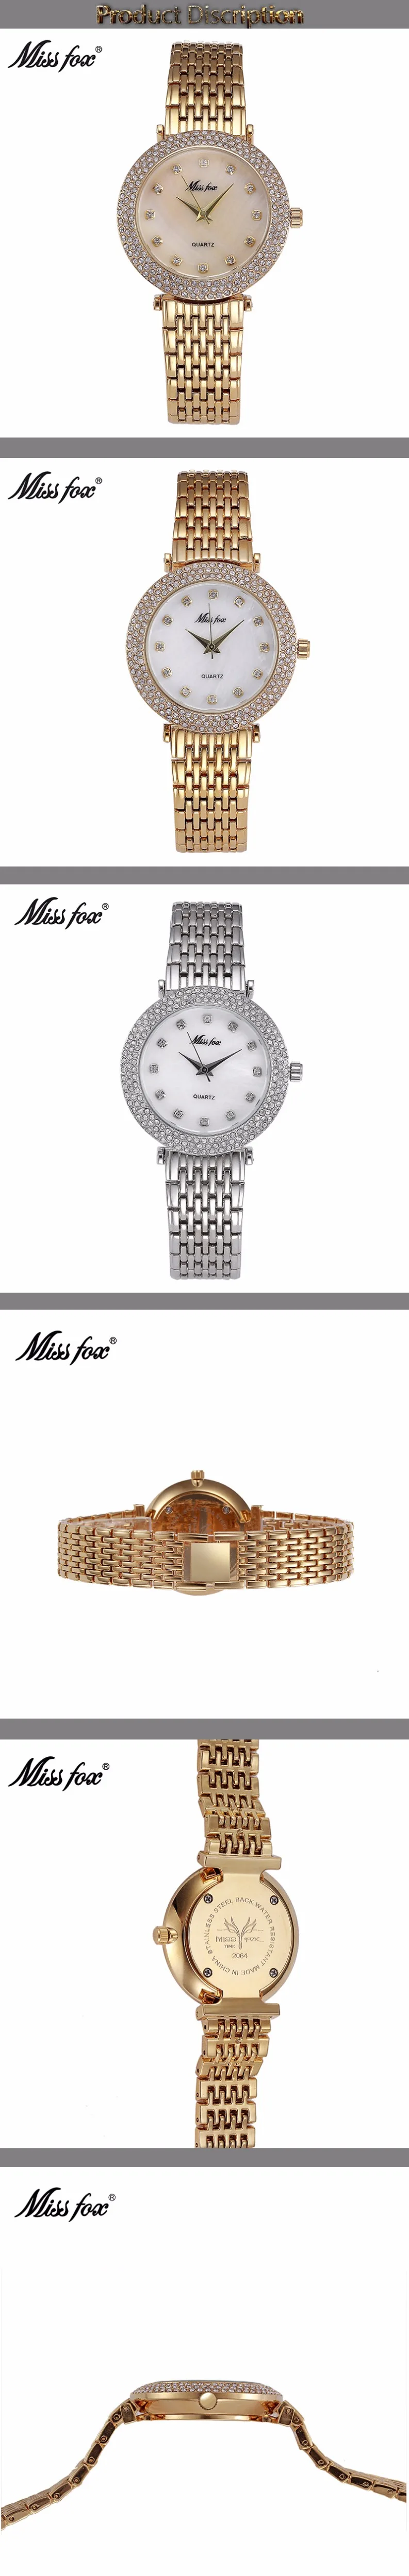 MISSFOX ударопрочный водонепроницаемый часы модный бренд импортный-Китай Erkek Saat алмаз Carnaval нержавеющая сталь Bu Bayan Kol Saati